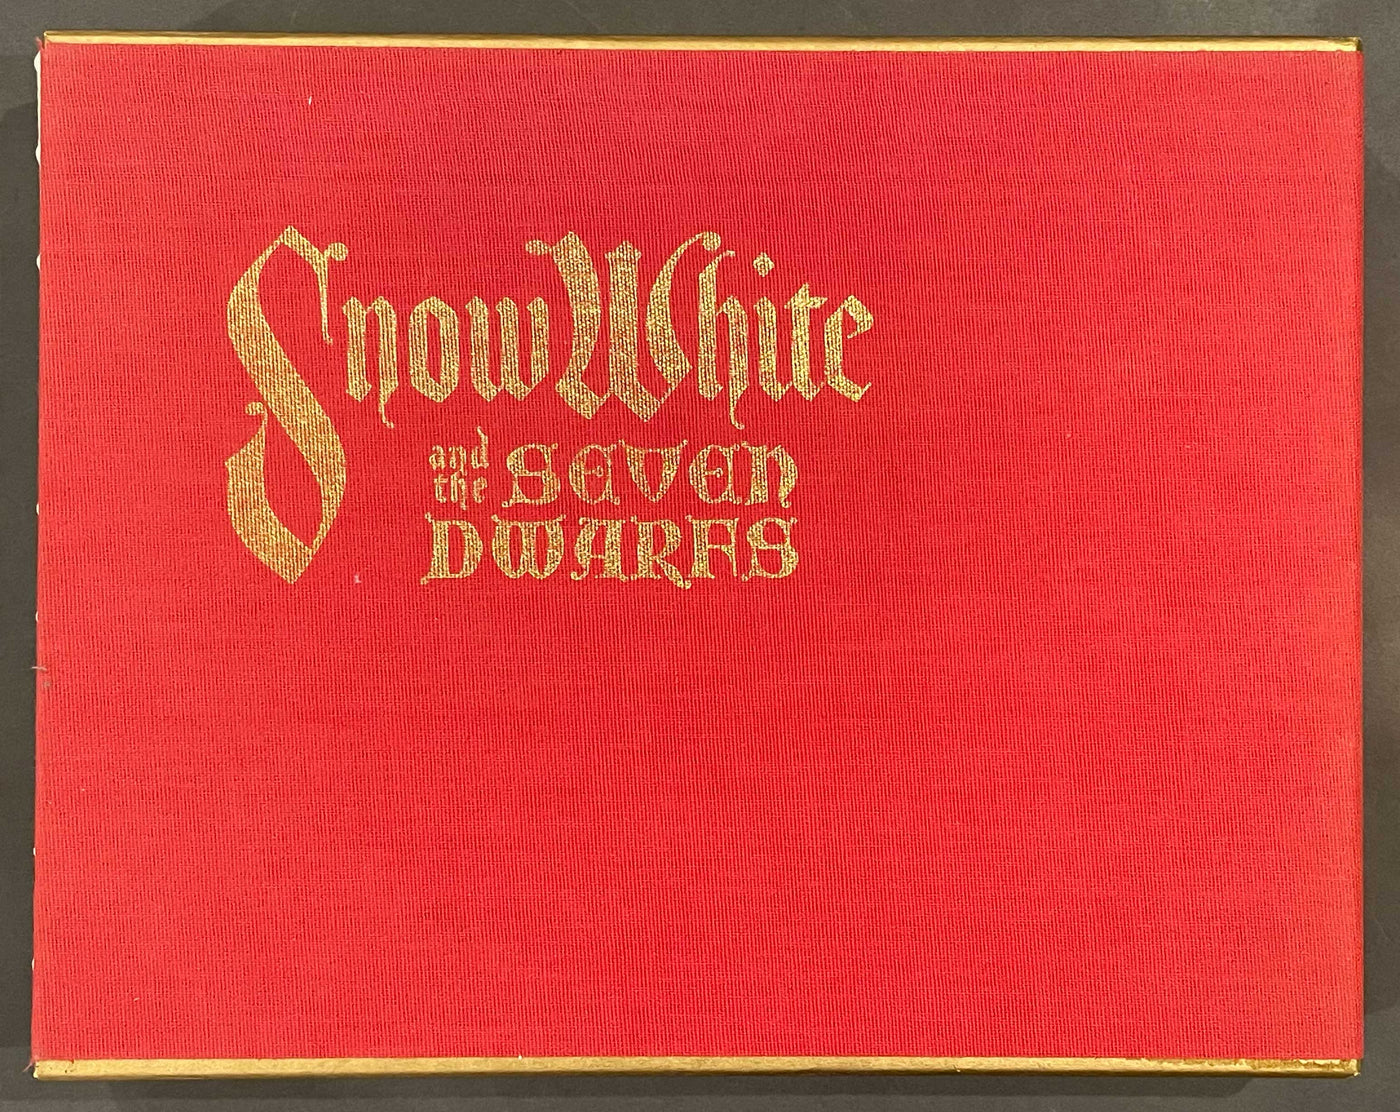 Original Walt Disney's Snow White and the Seven Dwarfs Book with Four Original Color Serigraphs